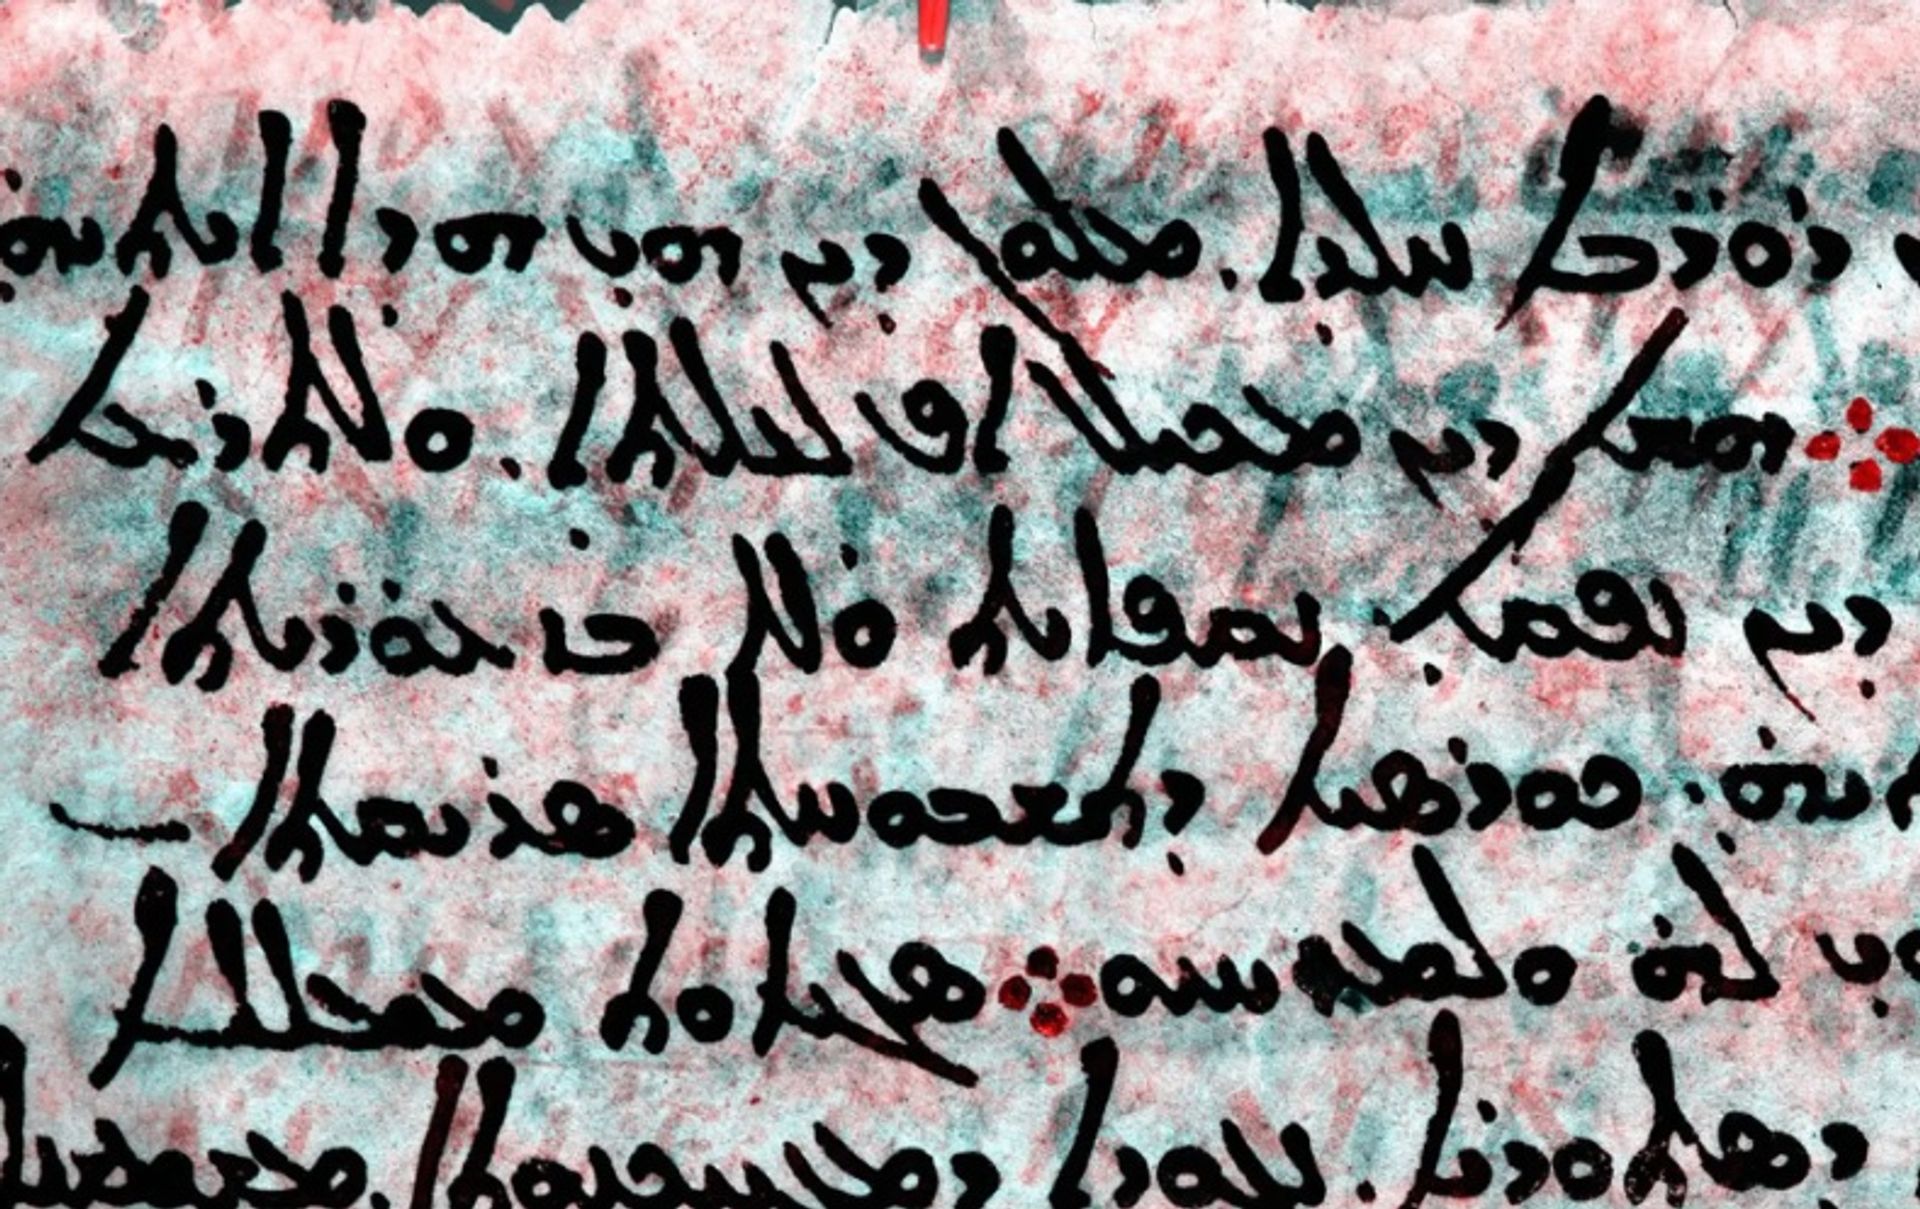 תמונה רב-ספקטרלית של עמוד מתוך Codex Climaci Rescriptus, המציגה את הטקסט היווני המחוק באדום מתחת לטקסט הסורי בשחור

באדיבות "מוזיאון אוסף התנ"ך". כל הזכויות שמורות. © מוזיאון התנ"ך, 2021